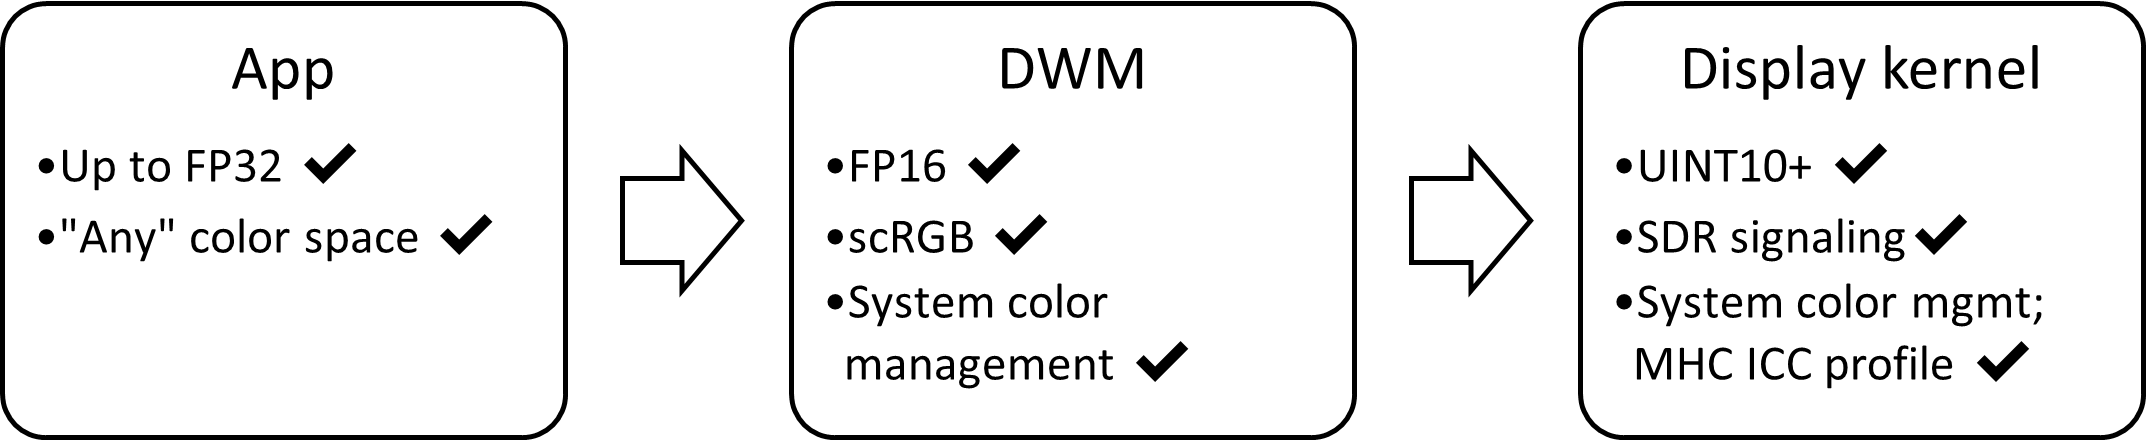 diagrama de bloques de la pila de visualización de SDR AC: FP16, scRGB, con administración automática de colores